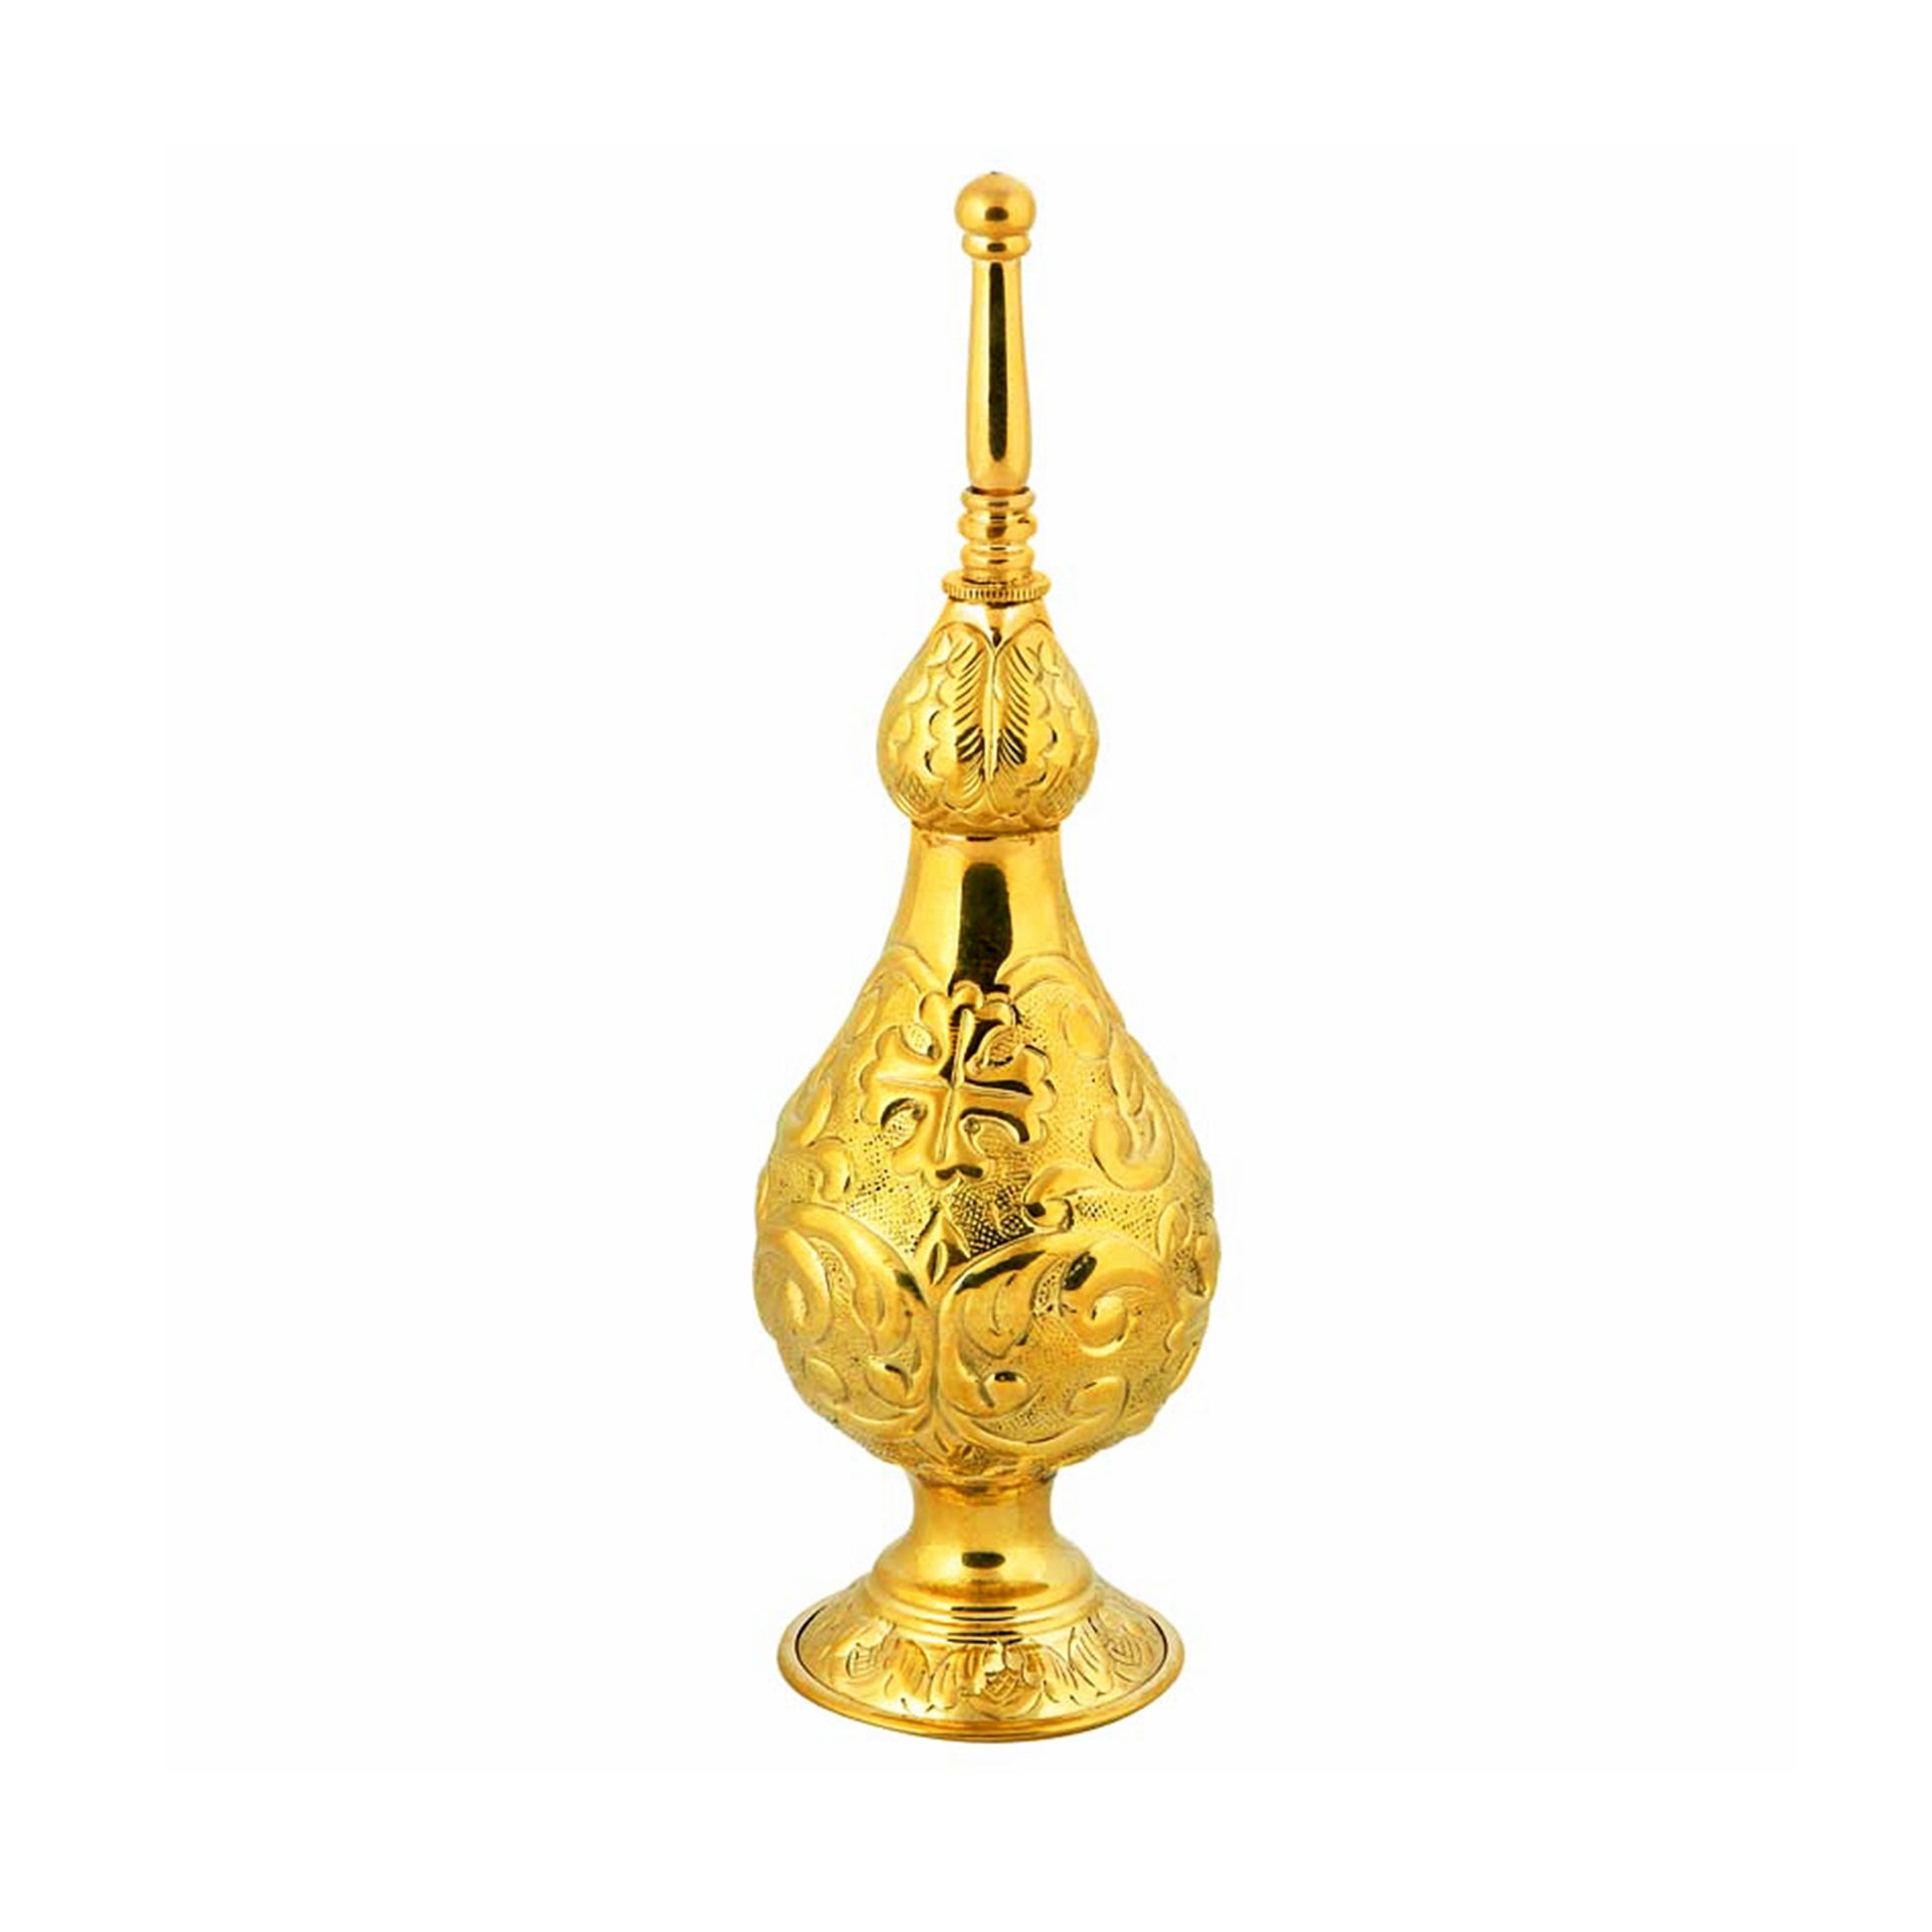 Christian Gold plated 24k Brass Holy Water Sprinkler, Relic Sprinkler Aspergillum, Gulab Pash religious decor TheHolyArt